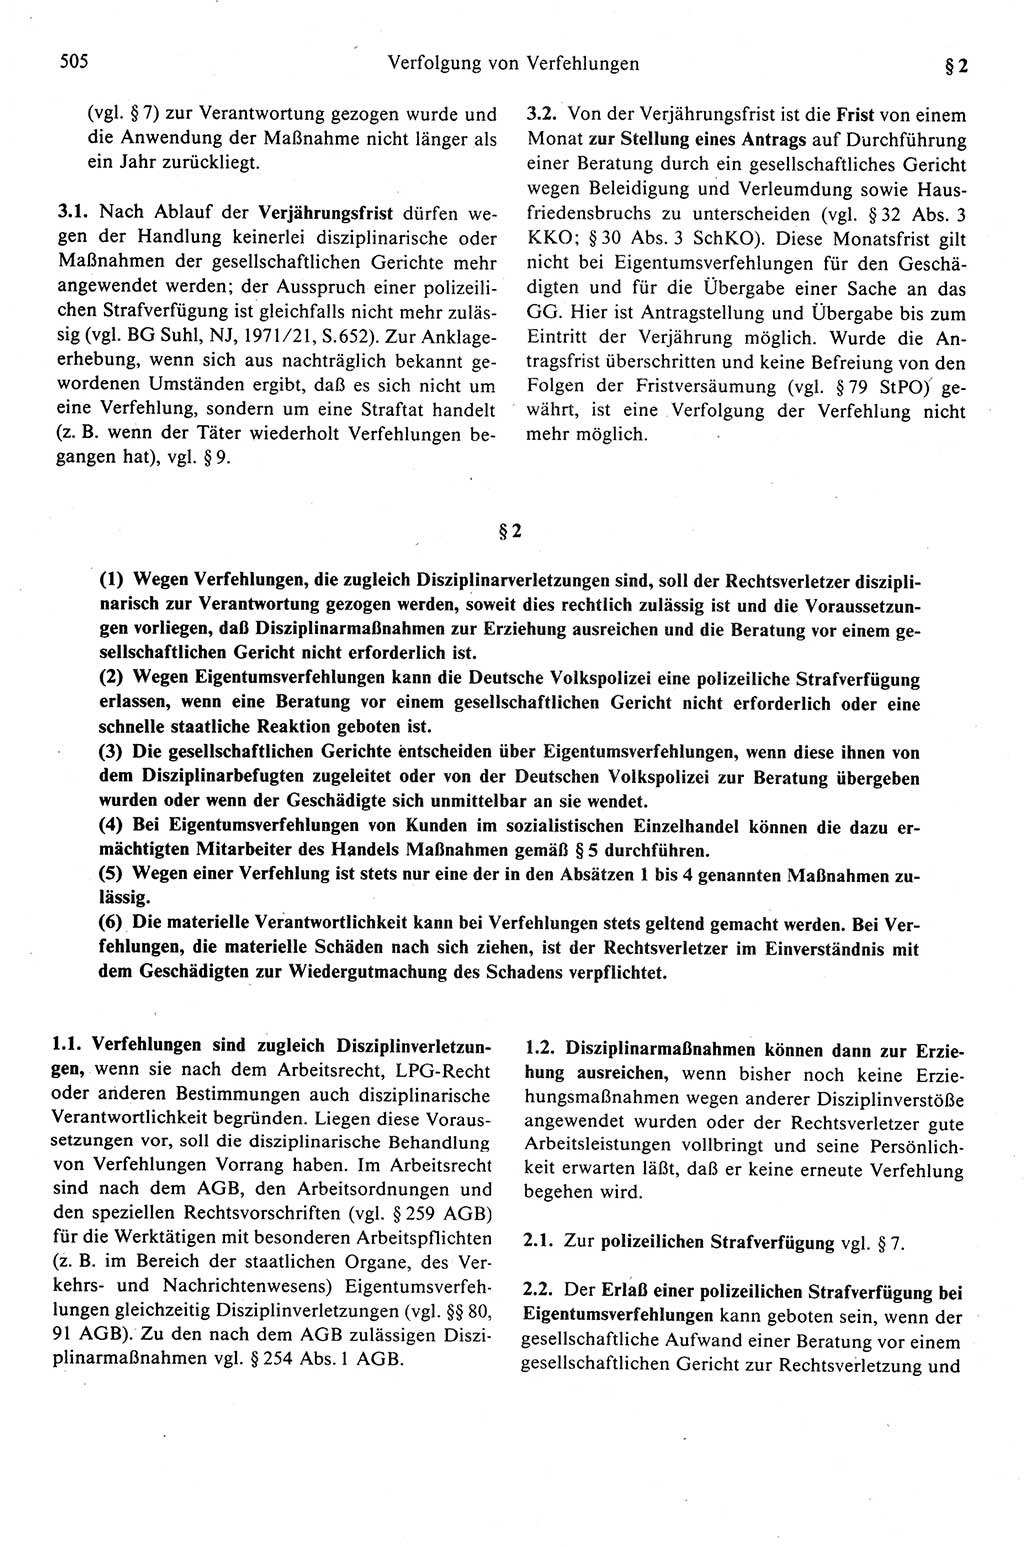 Strafprozeßrecht der DDR (Deutsche Demokratische Republik), Kommentar zur Strafprozeßordnung (StPO) 1989, Seite 505 (Strafprozeßr. DDR Komm. StPO 1989, S. 505)